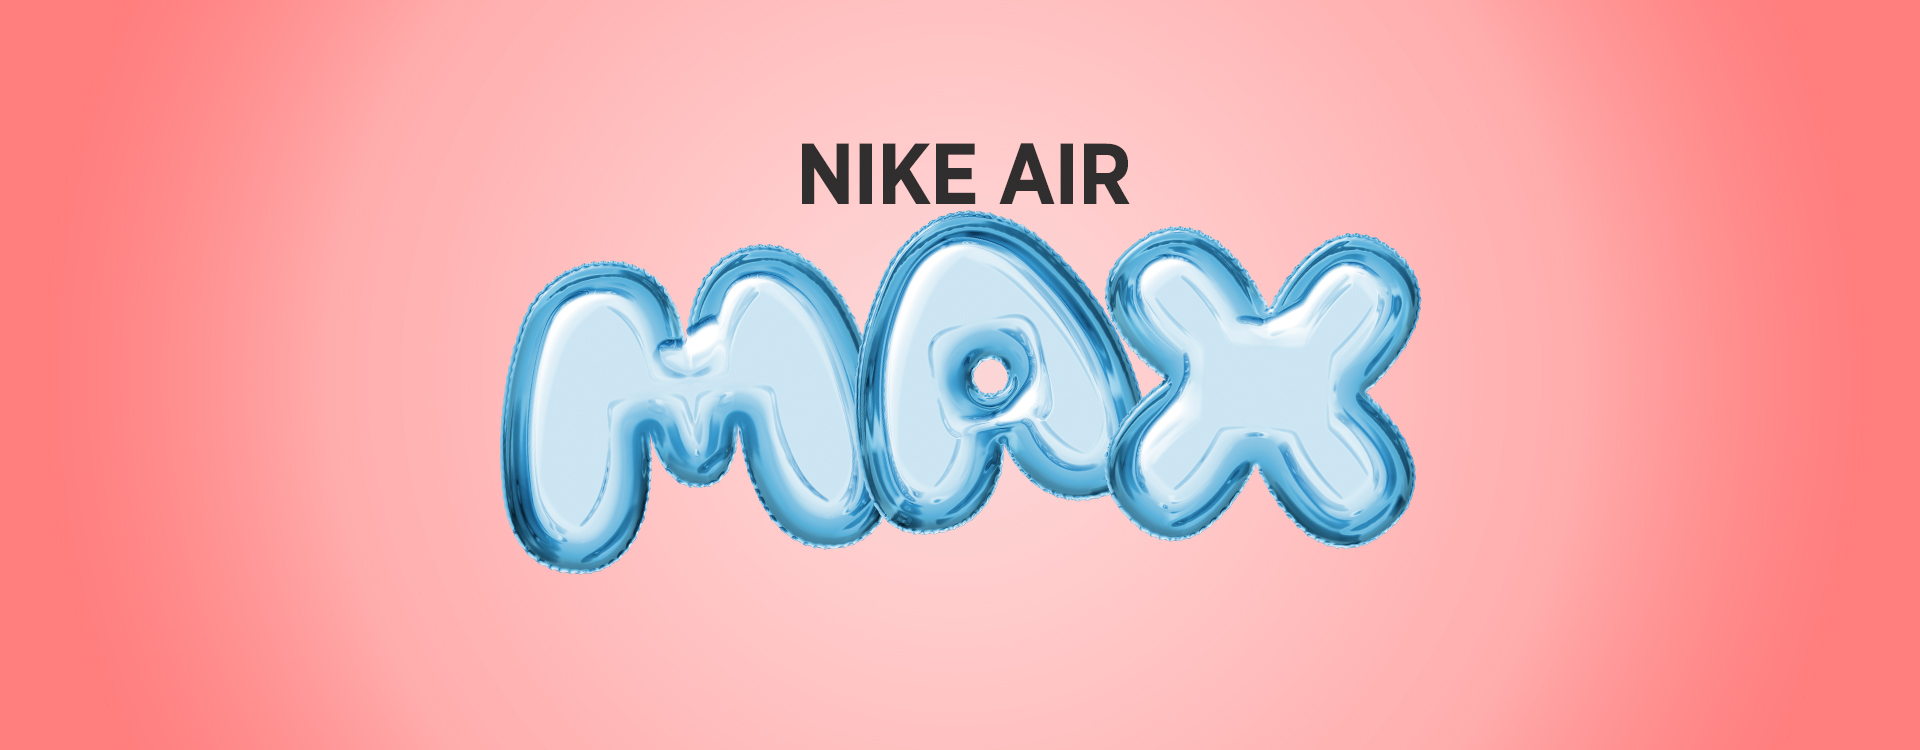 ИСТОРИЯ ВДОХНОВЕНИЯ: AIR MAX